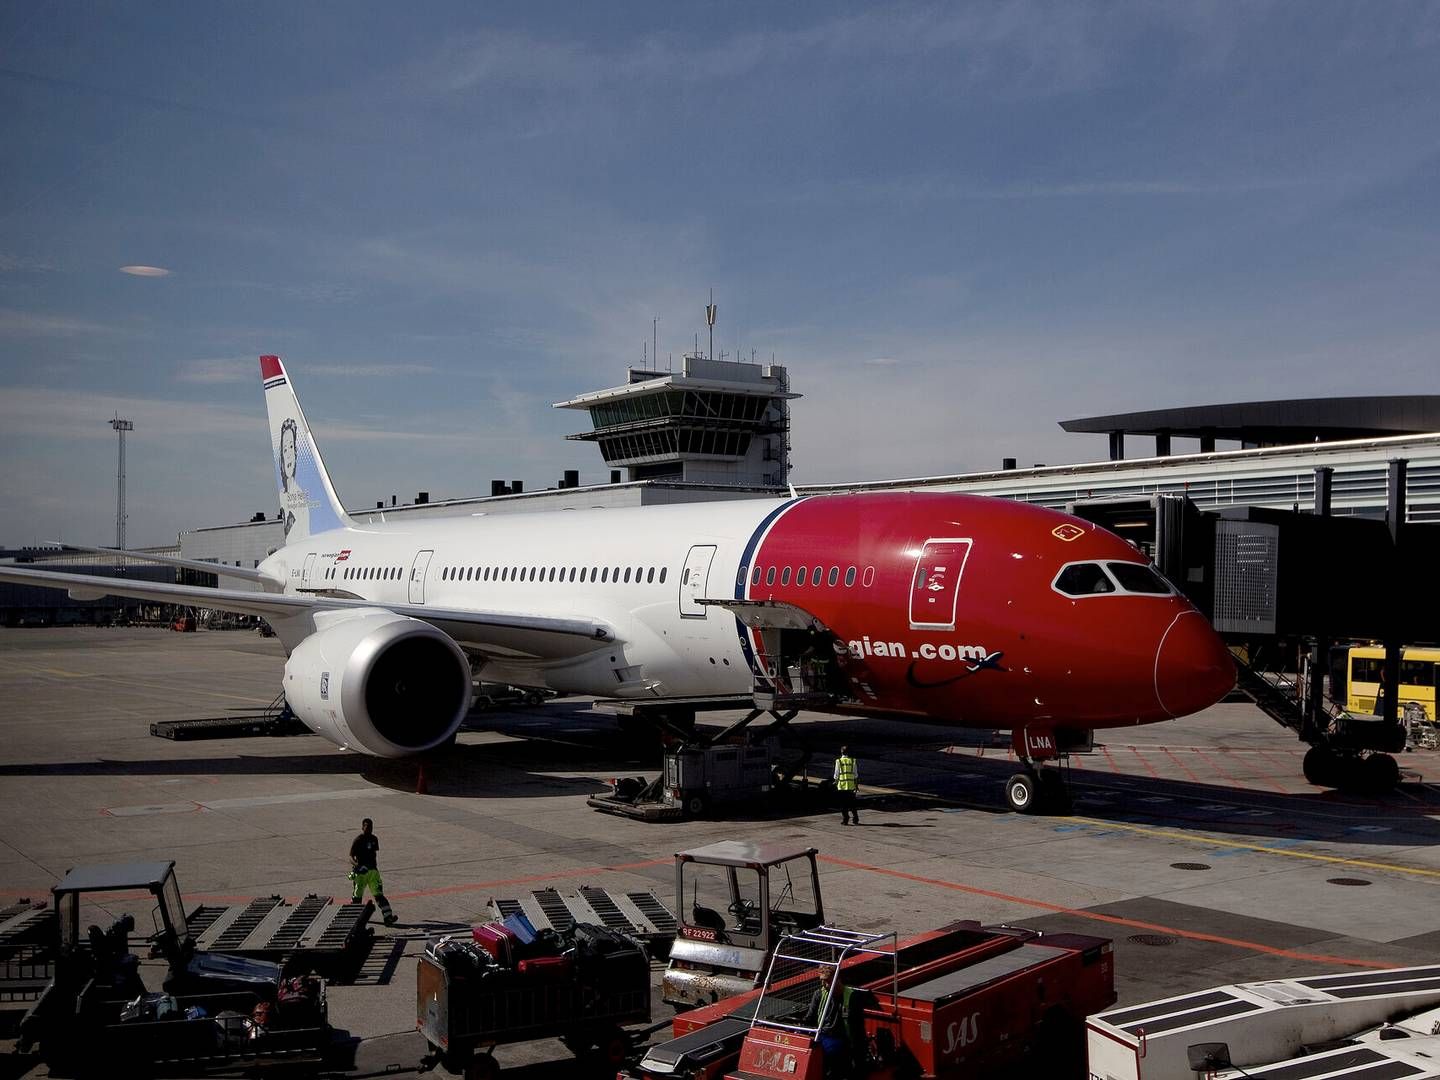 "Det er det samlede afgiftsniveau, der vil være afgørende for luftfartsbranchen,” skriver minister. | Foto: Finn Frandsen/Politiken/Ritzau Scanpix